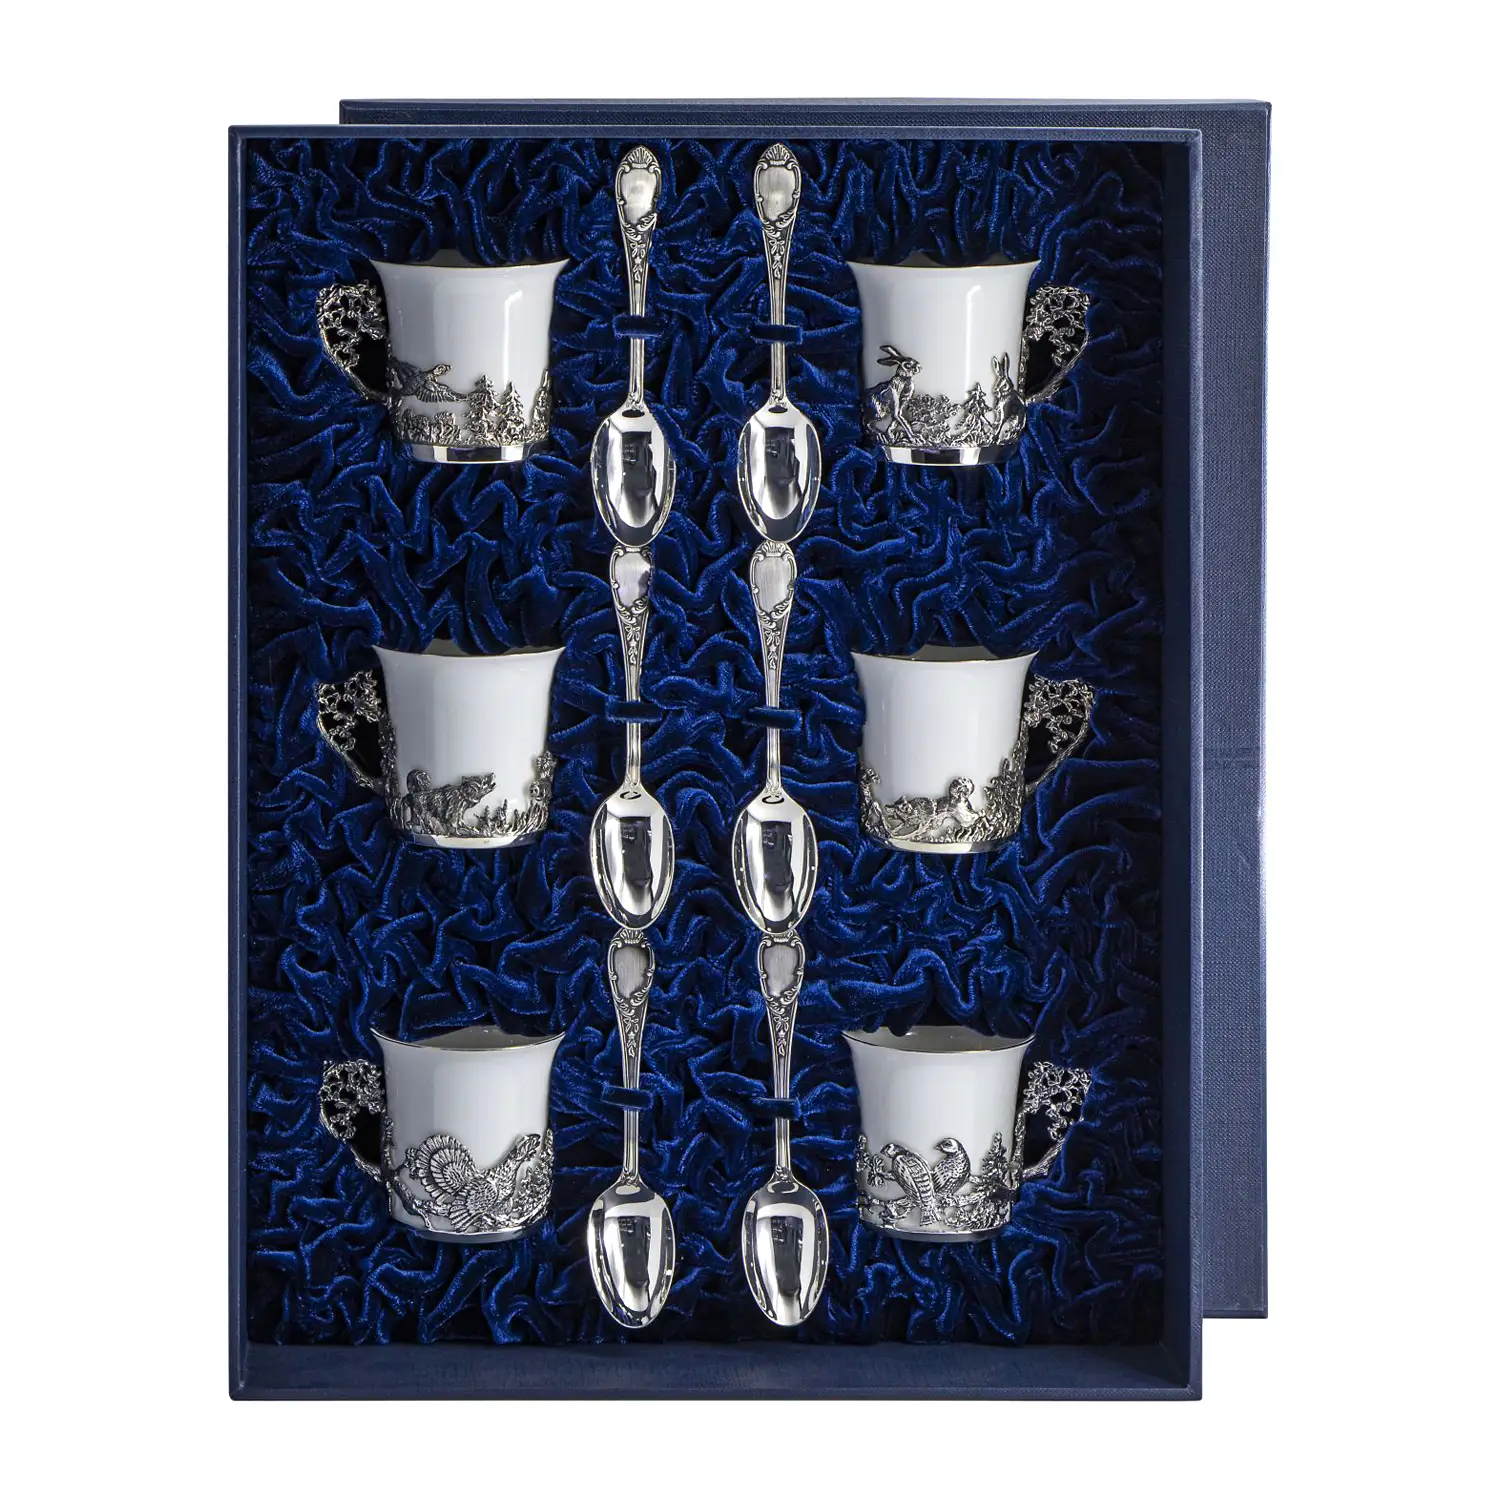 Набор кофейных чашек Охотничьи: ложка, чашка (Серебро 925) набор кофейных чашек охотничьи ложка чашка серебро 925